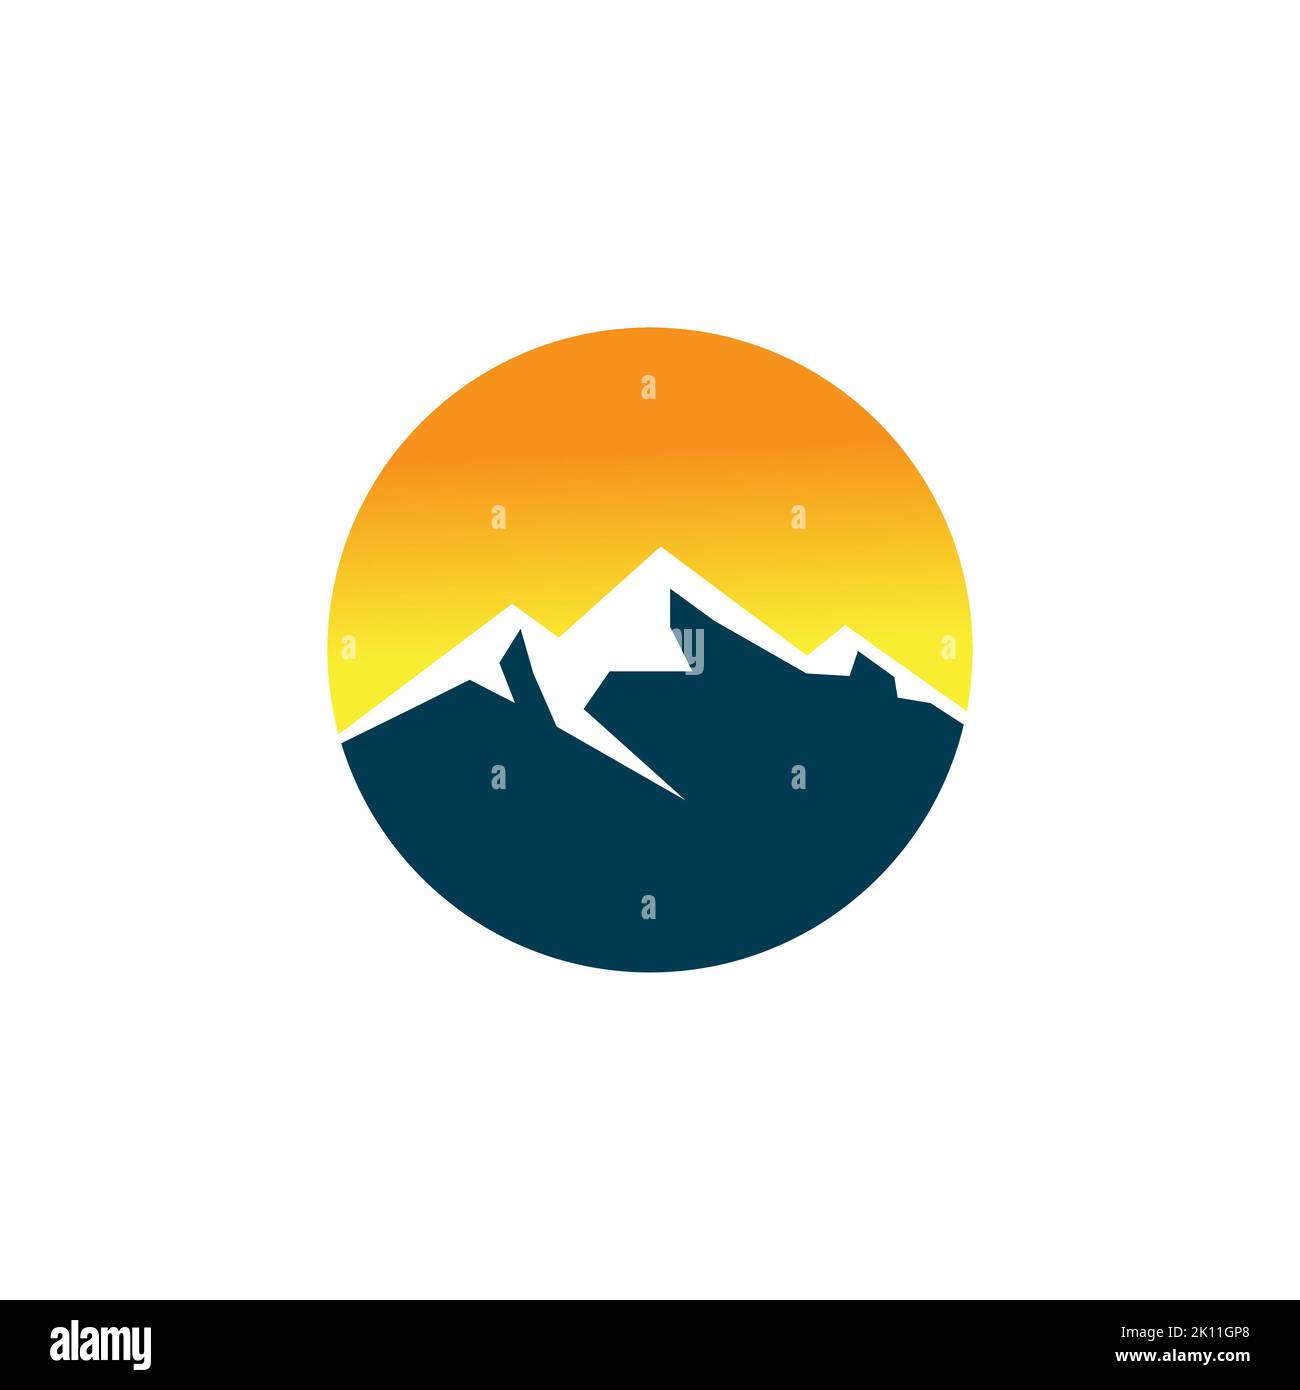 Mountain logo design template. shine sky with mountain illustration Stock Vector